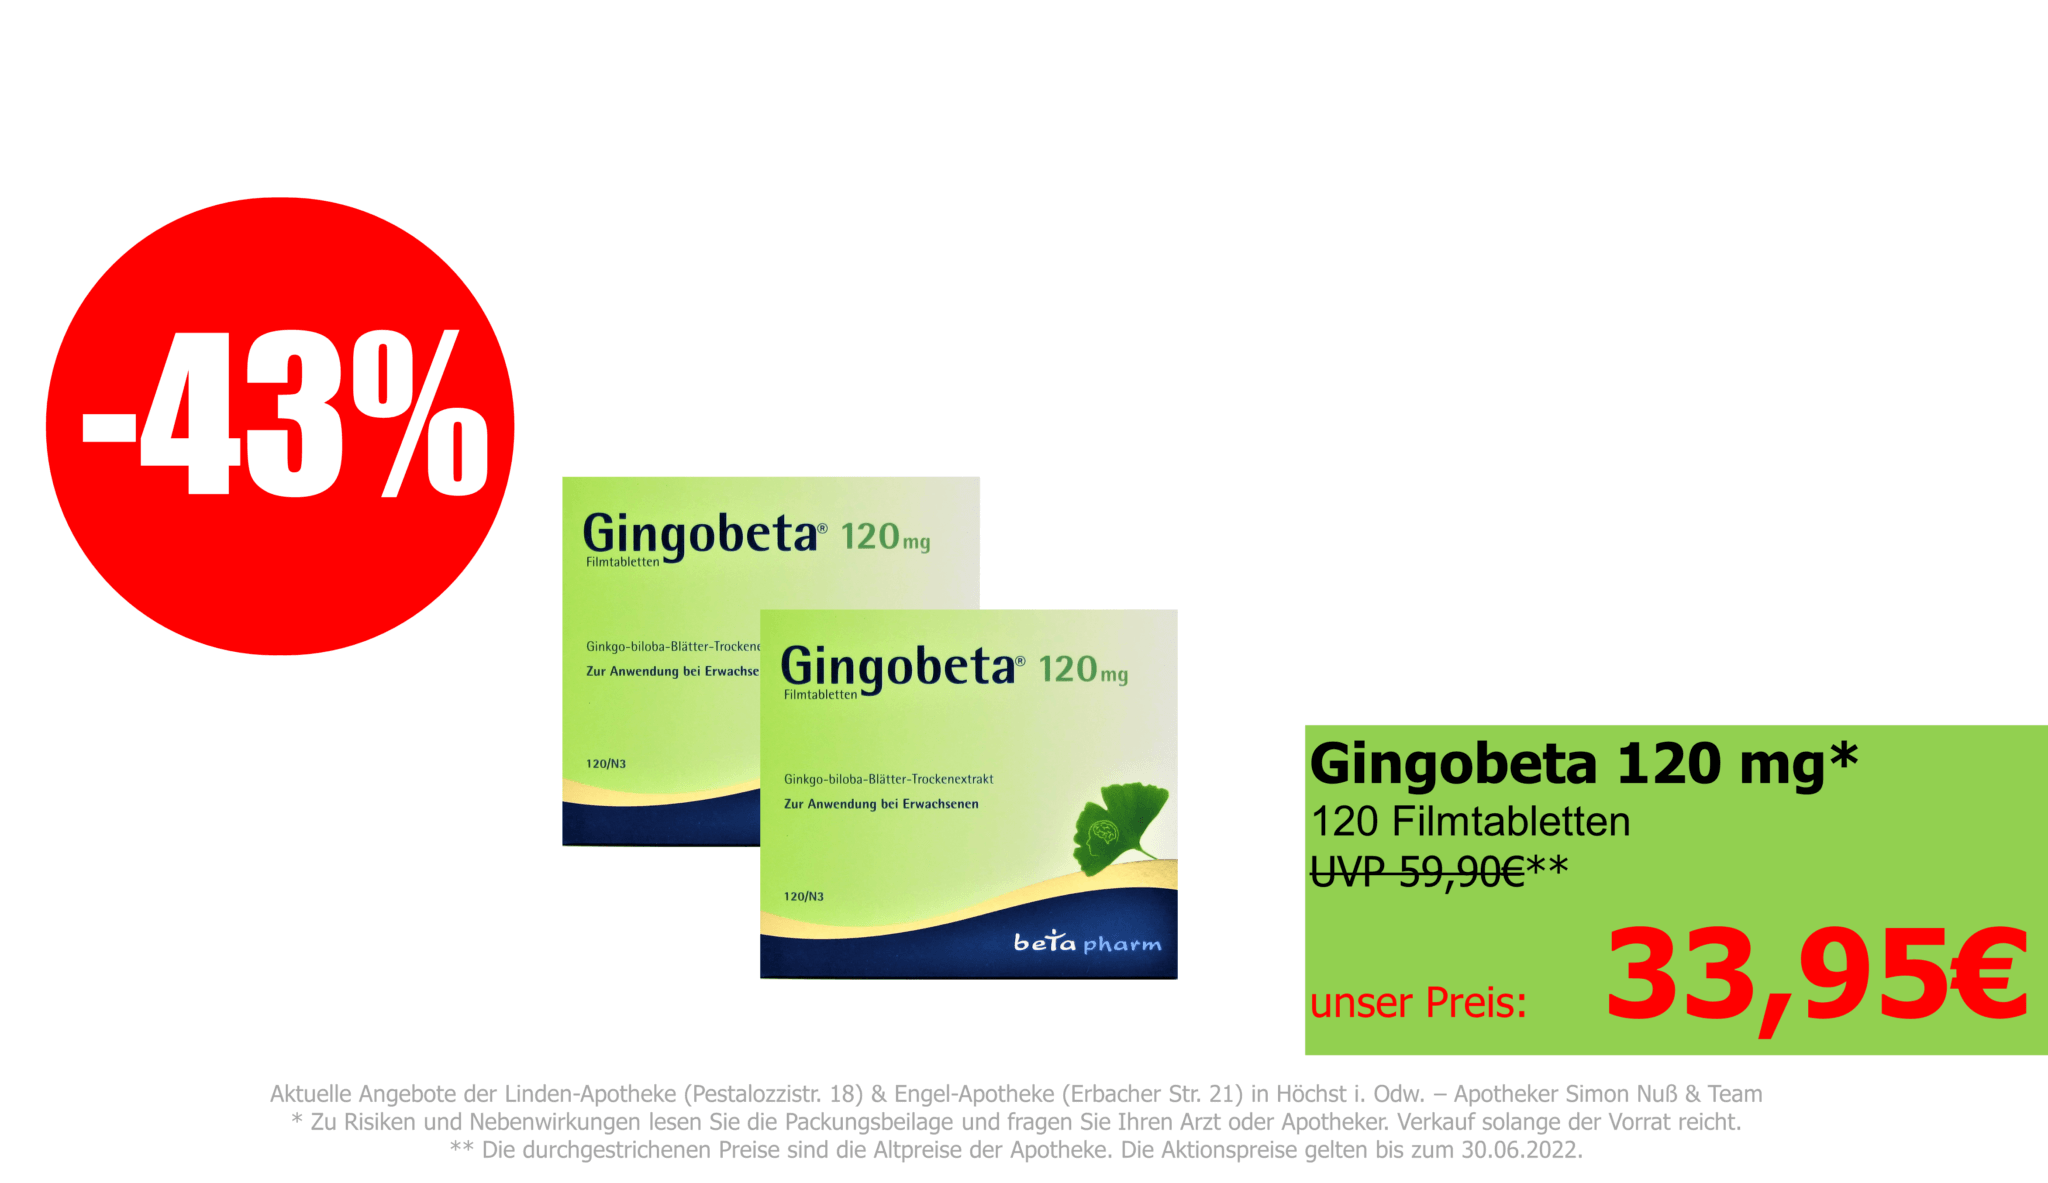 Gingobeta 120 mg